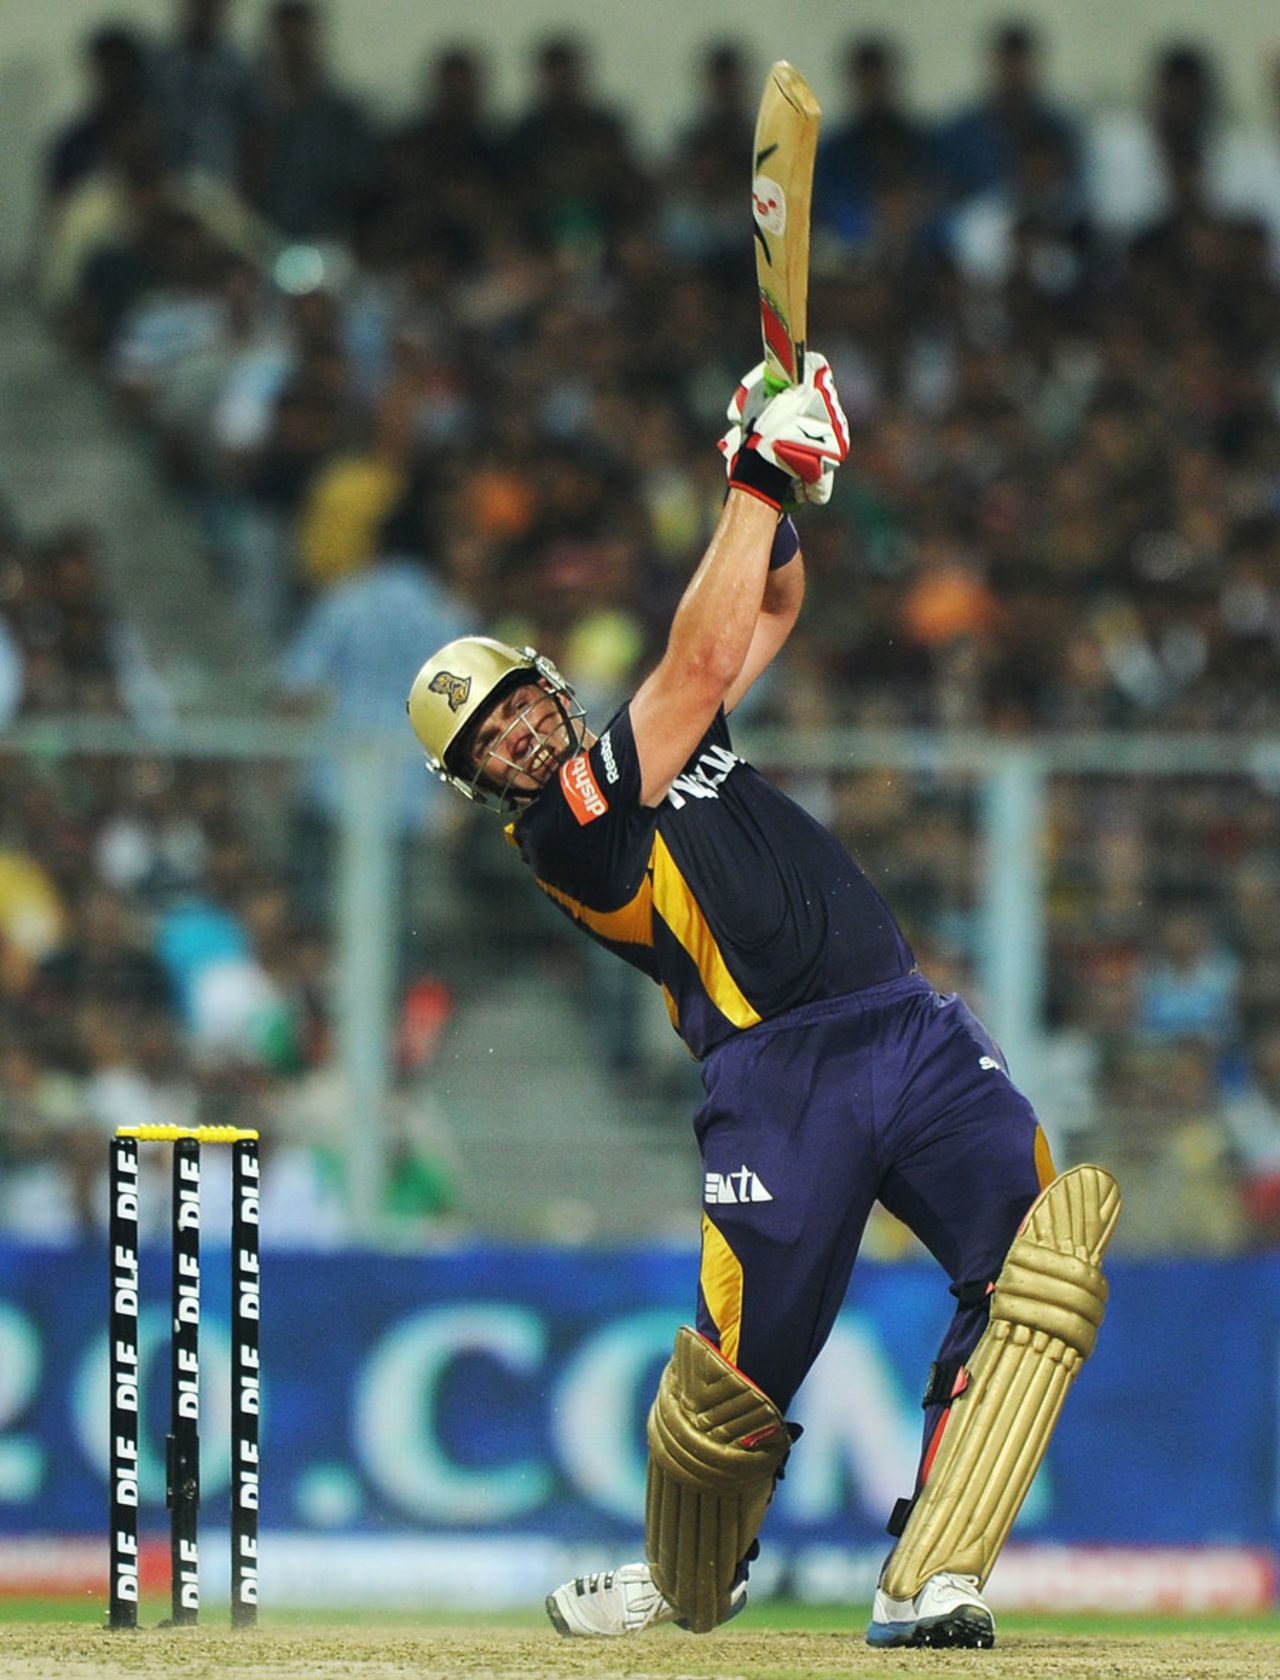 Jacques Kallis hammered 41 off 27 balls, Kolkata Knight Riders v Royal Challengers, IPL, Kolkata, April 28, 2012